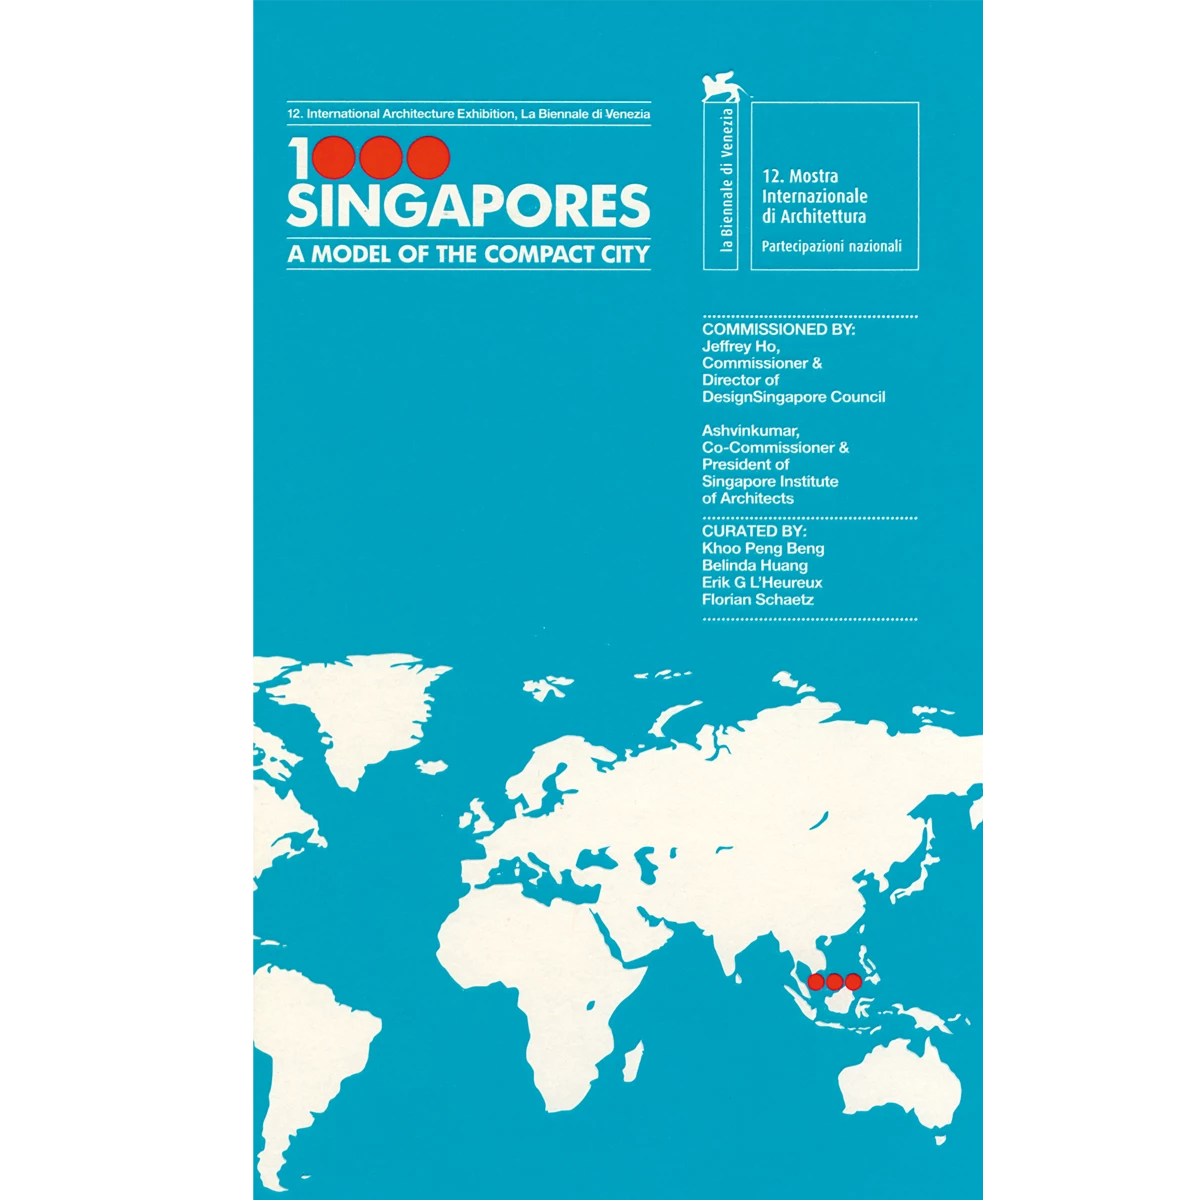 1000 Singapores